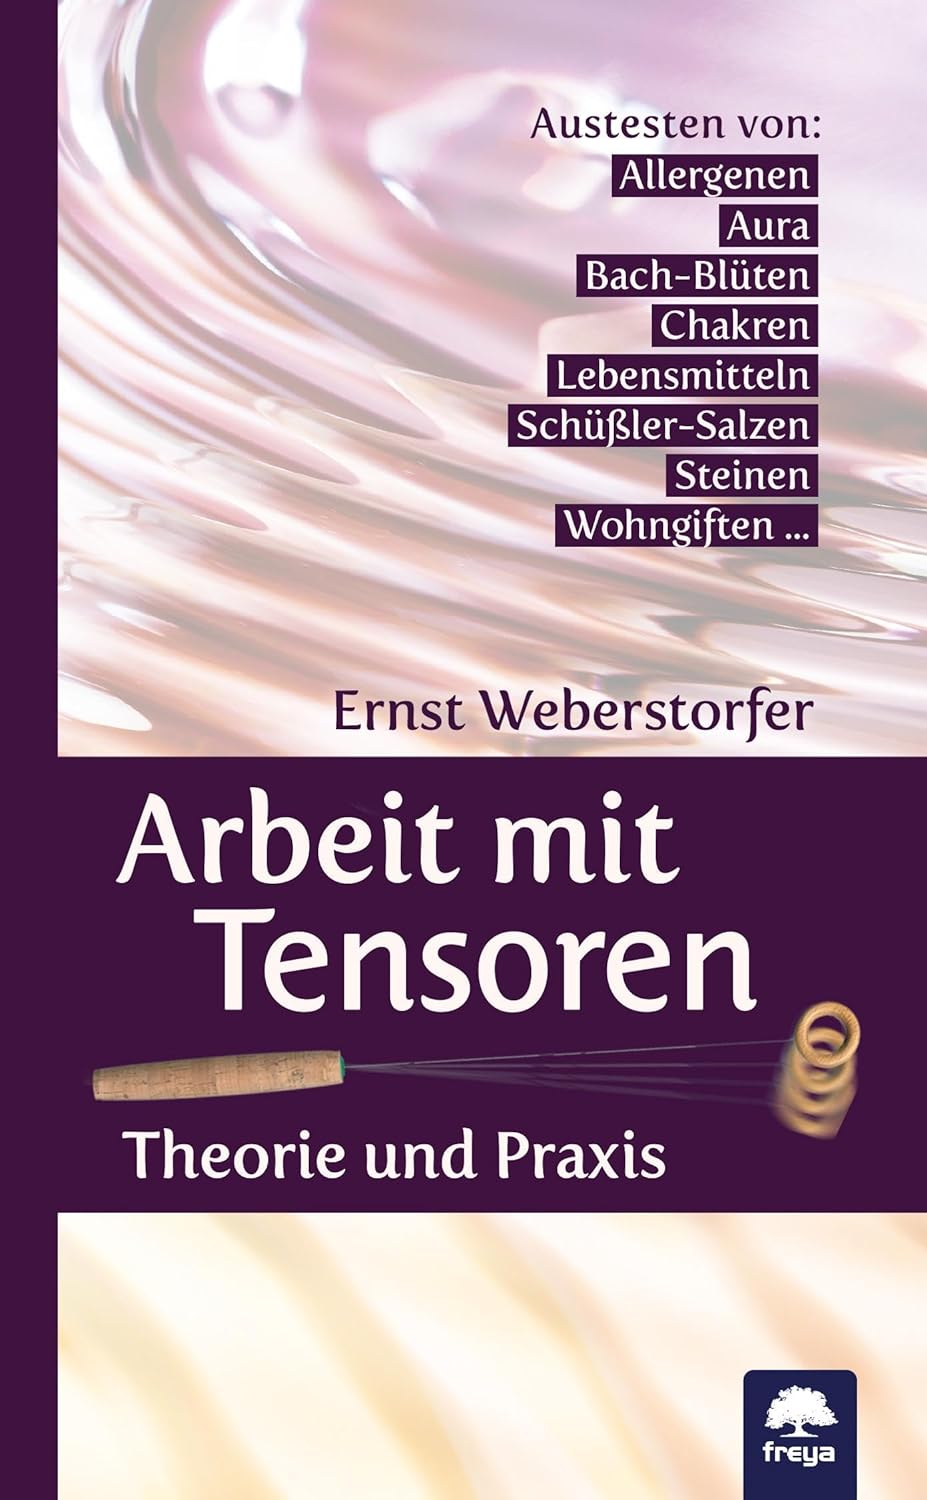 Arbeiten mit Tensoren von Ernst Weberstorfer (german)